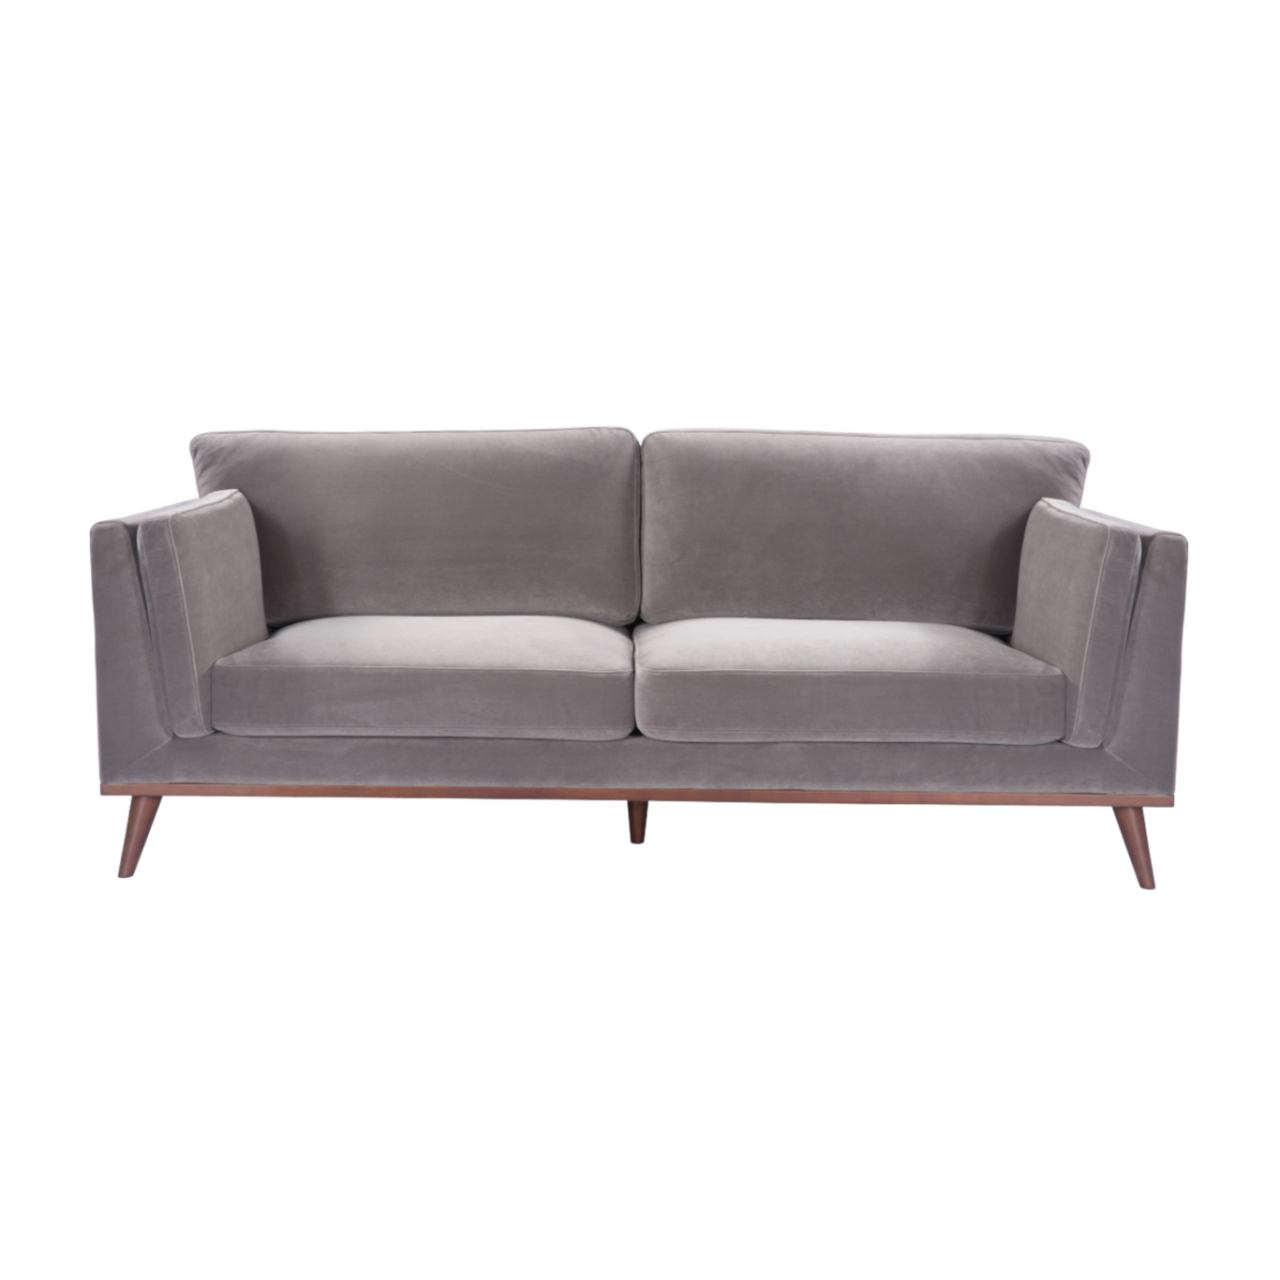 simple modern 3 seater sofa in stone grey velvet upholstery